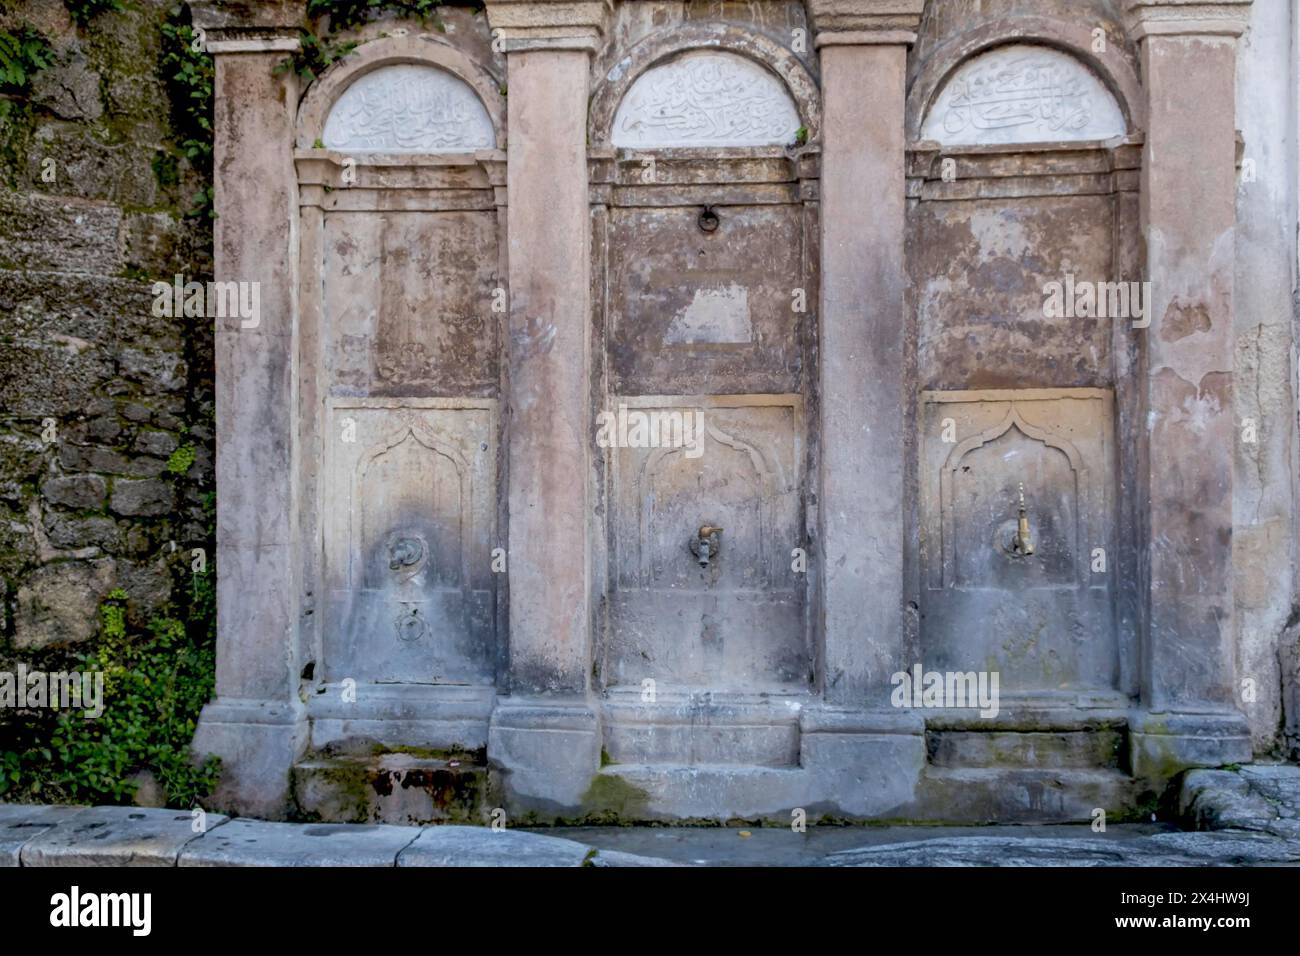 Fontaine de nettoyage de la mosquée Mehmet Aga, vieille ville de Rhodes, Rhodes, archipel du Dodécanèse, îles grecques, Grèce, Europe Banque D'Images